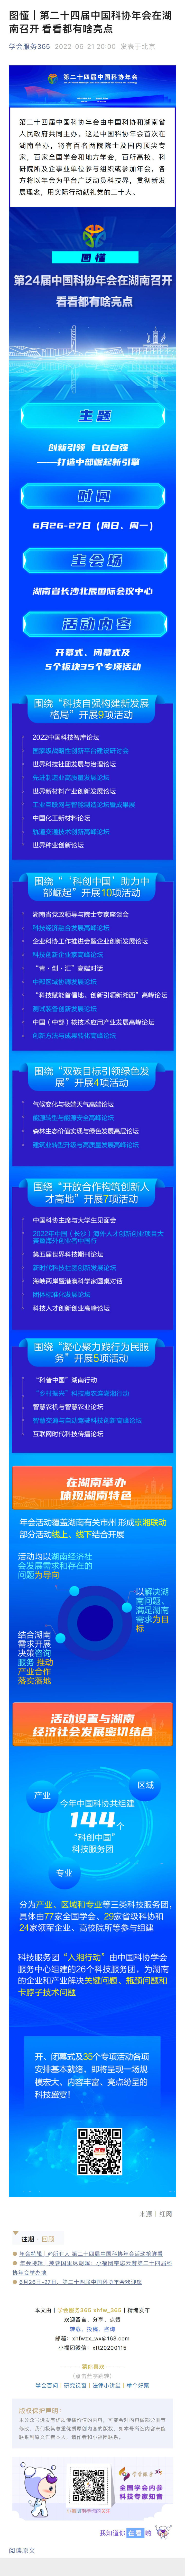 天辰平台注册地址图懂｜第二十四届中国科协年会在湖南召开 看看都有啥亮点